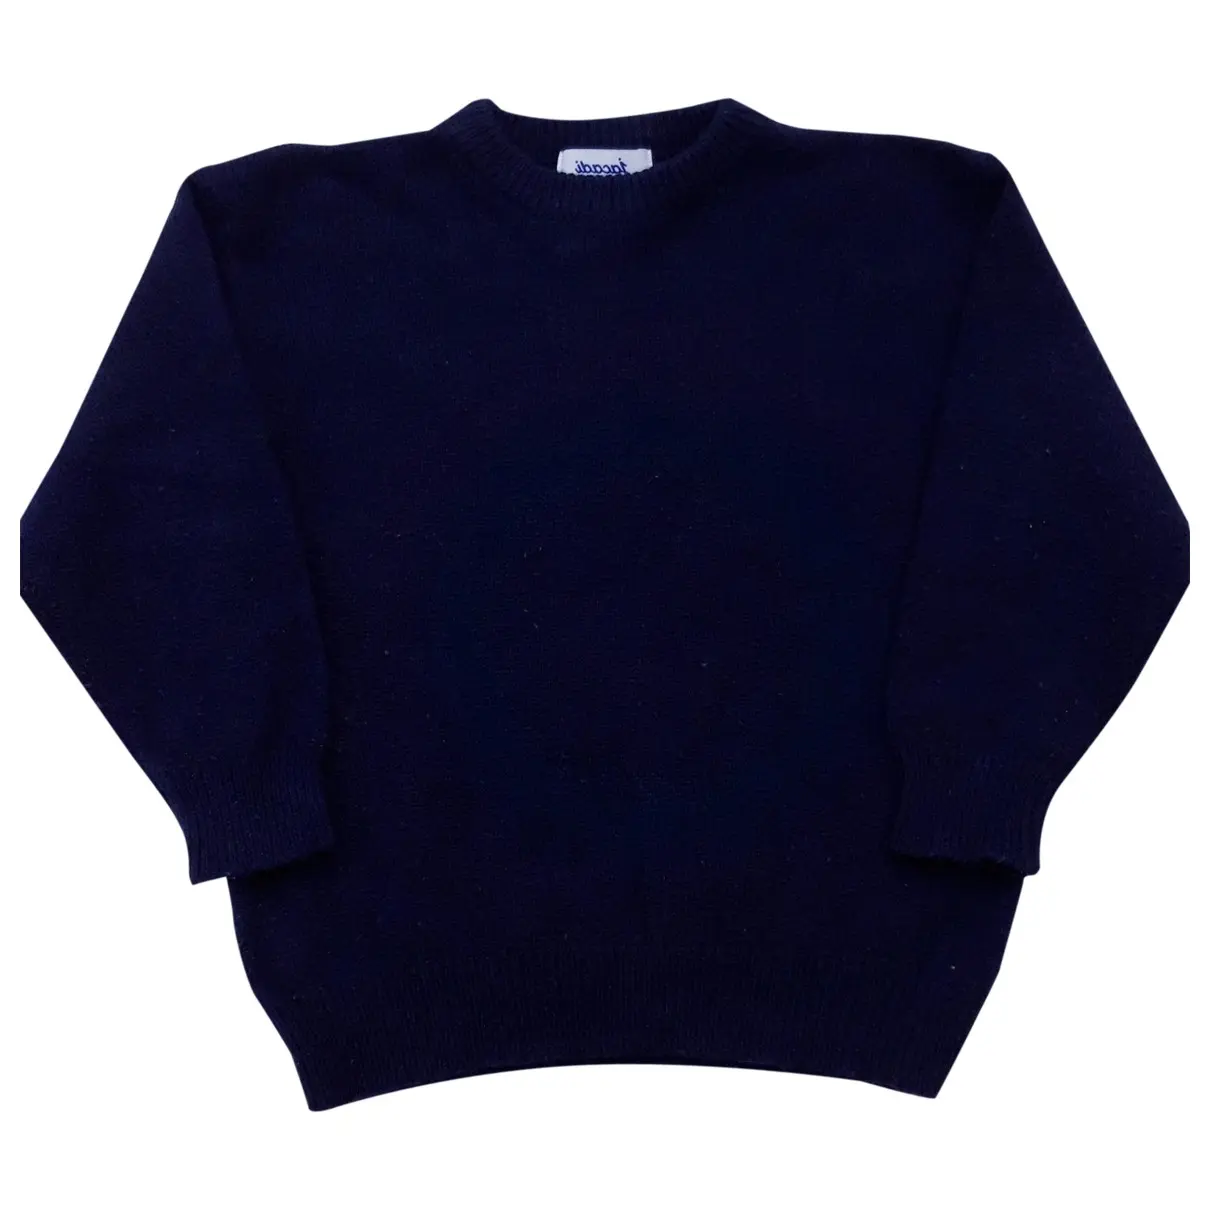 Wool sweater Jacadi